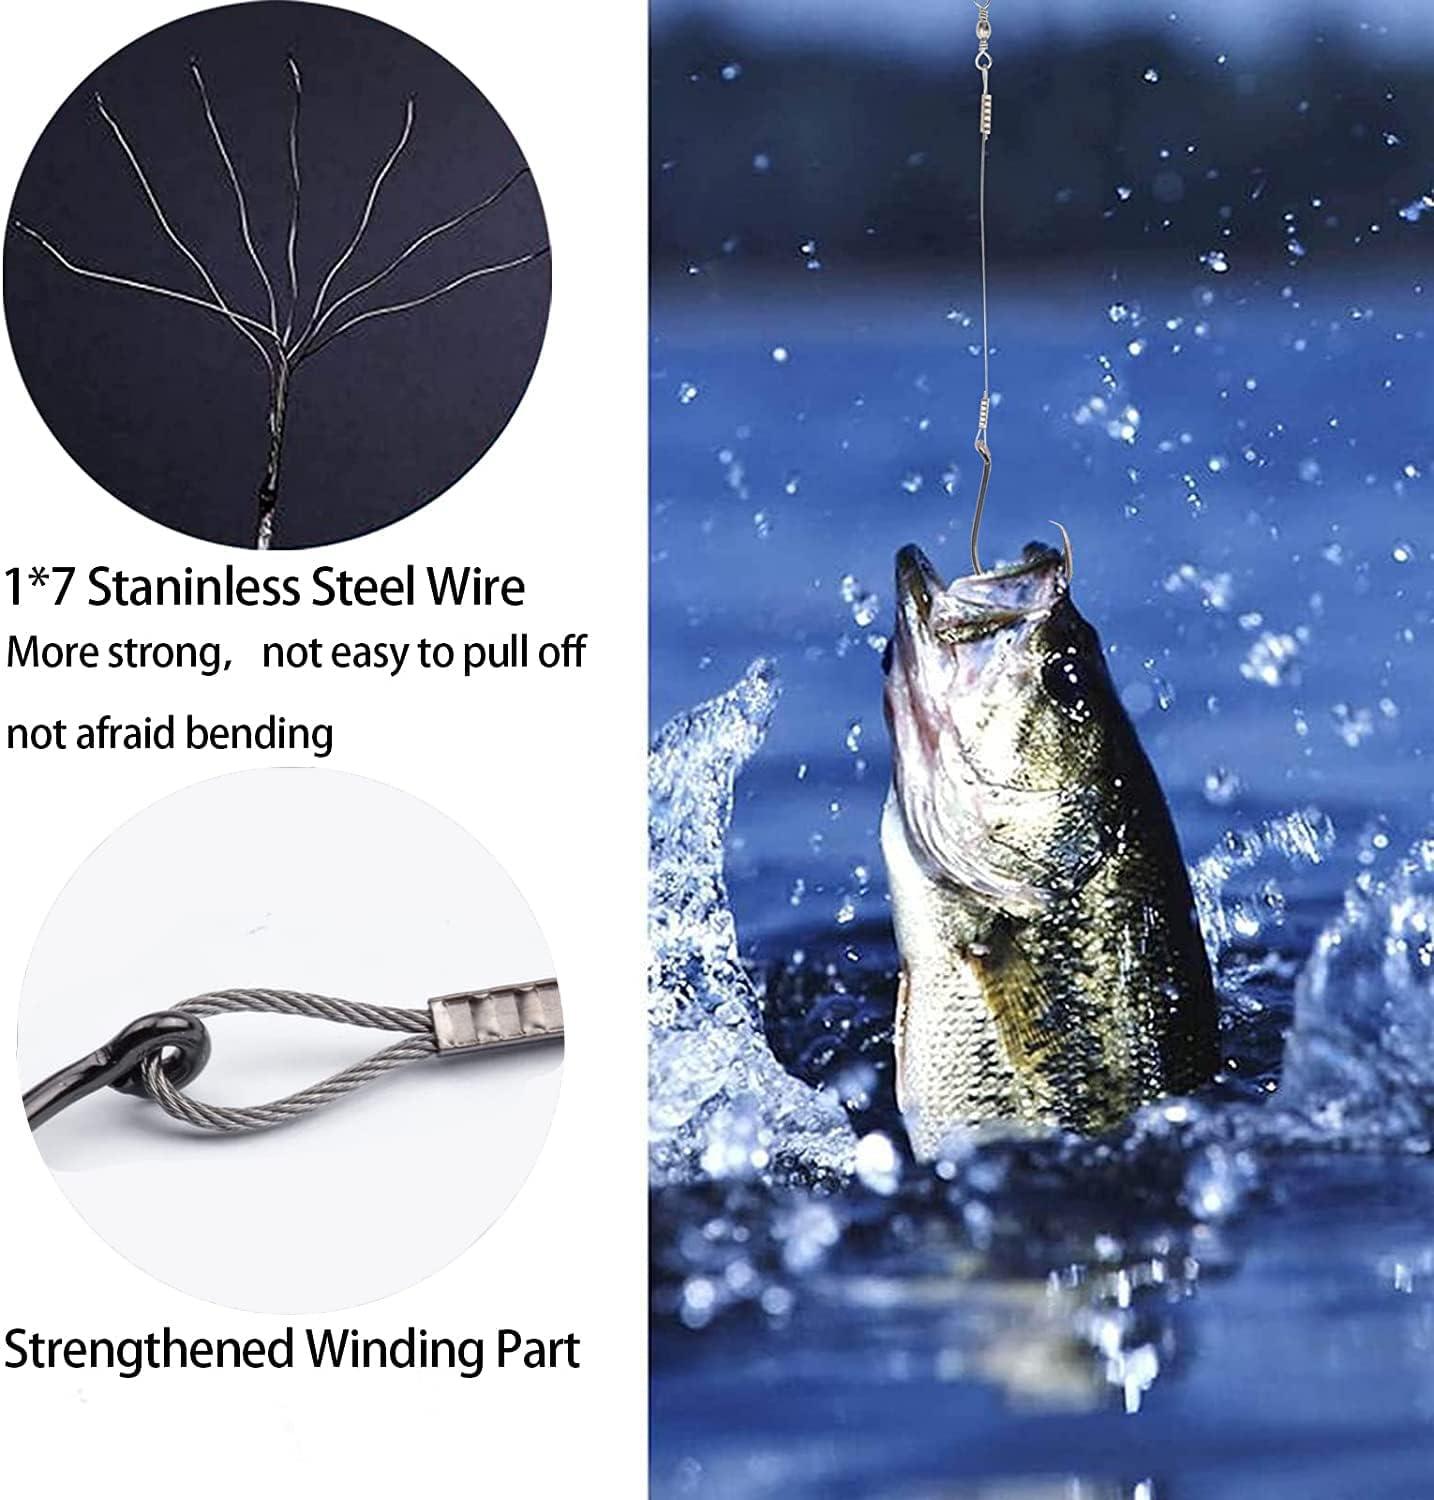 Fishing Starter Kit Tackle Box - Bass, Panfish, and More - Hand Selected -  60pcs